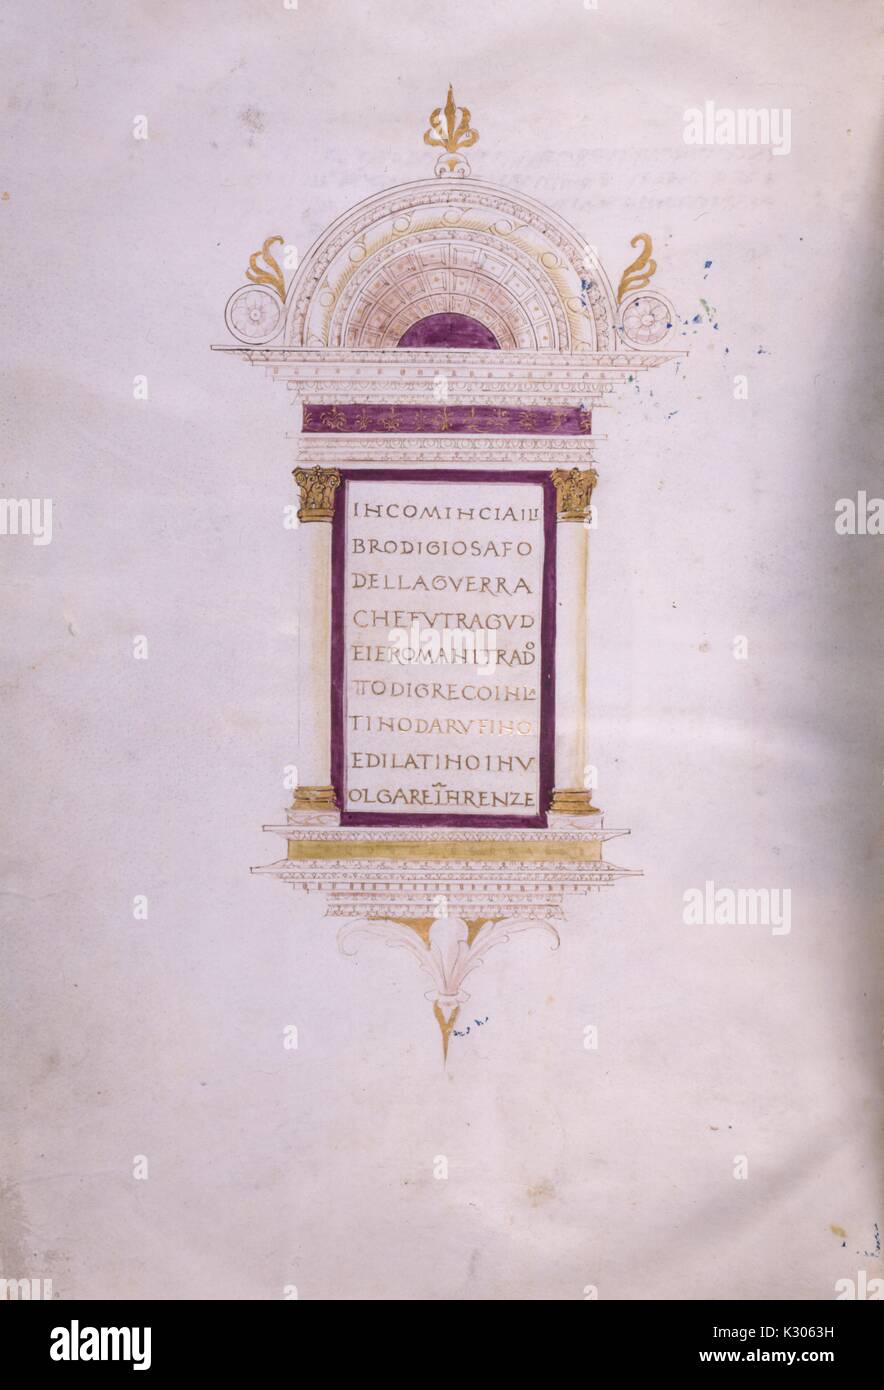 Illuminated manuscript page from 'Incomincia il proemio di giosafo della guerra chefu tragudei e romani' printed in Italian from 15th century, 1400. Stock Photo